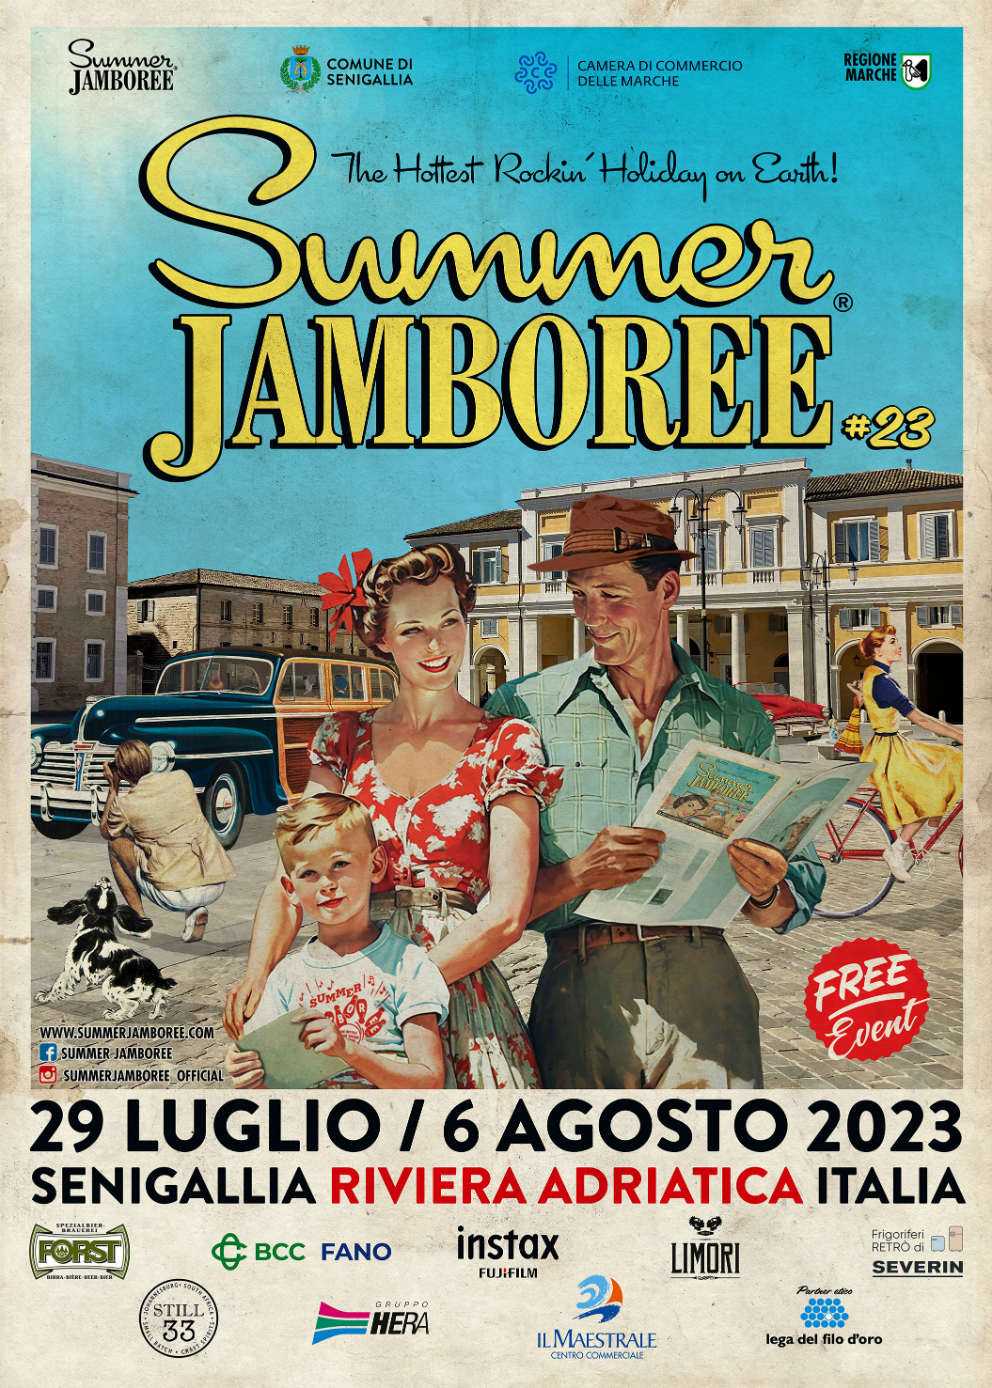 FUJIFILM: Instax Official Sponsor del Summer Jamboree